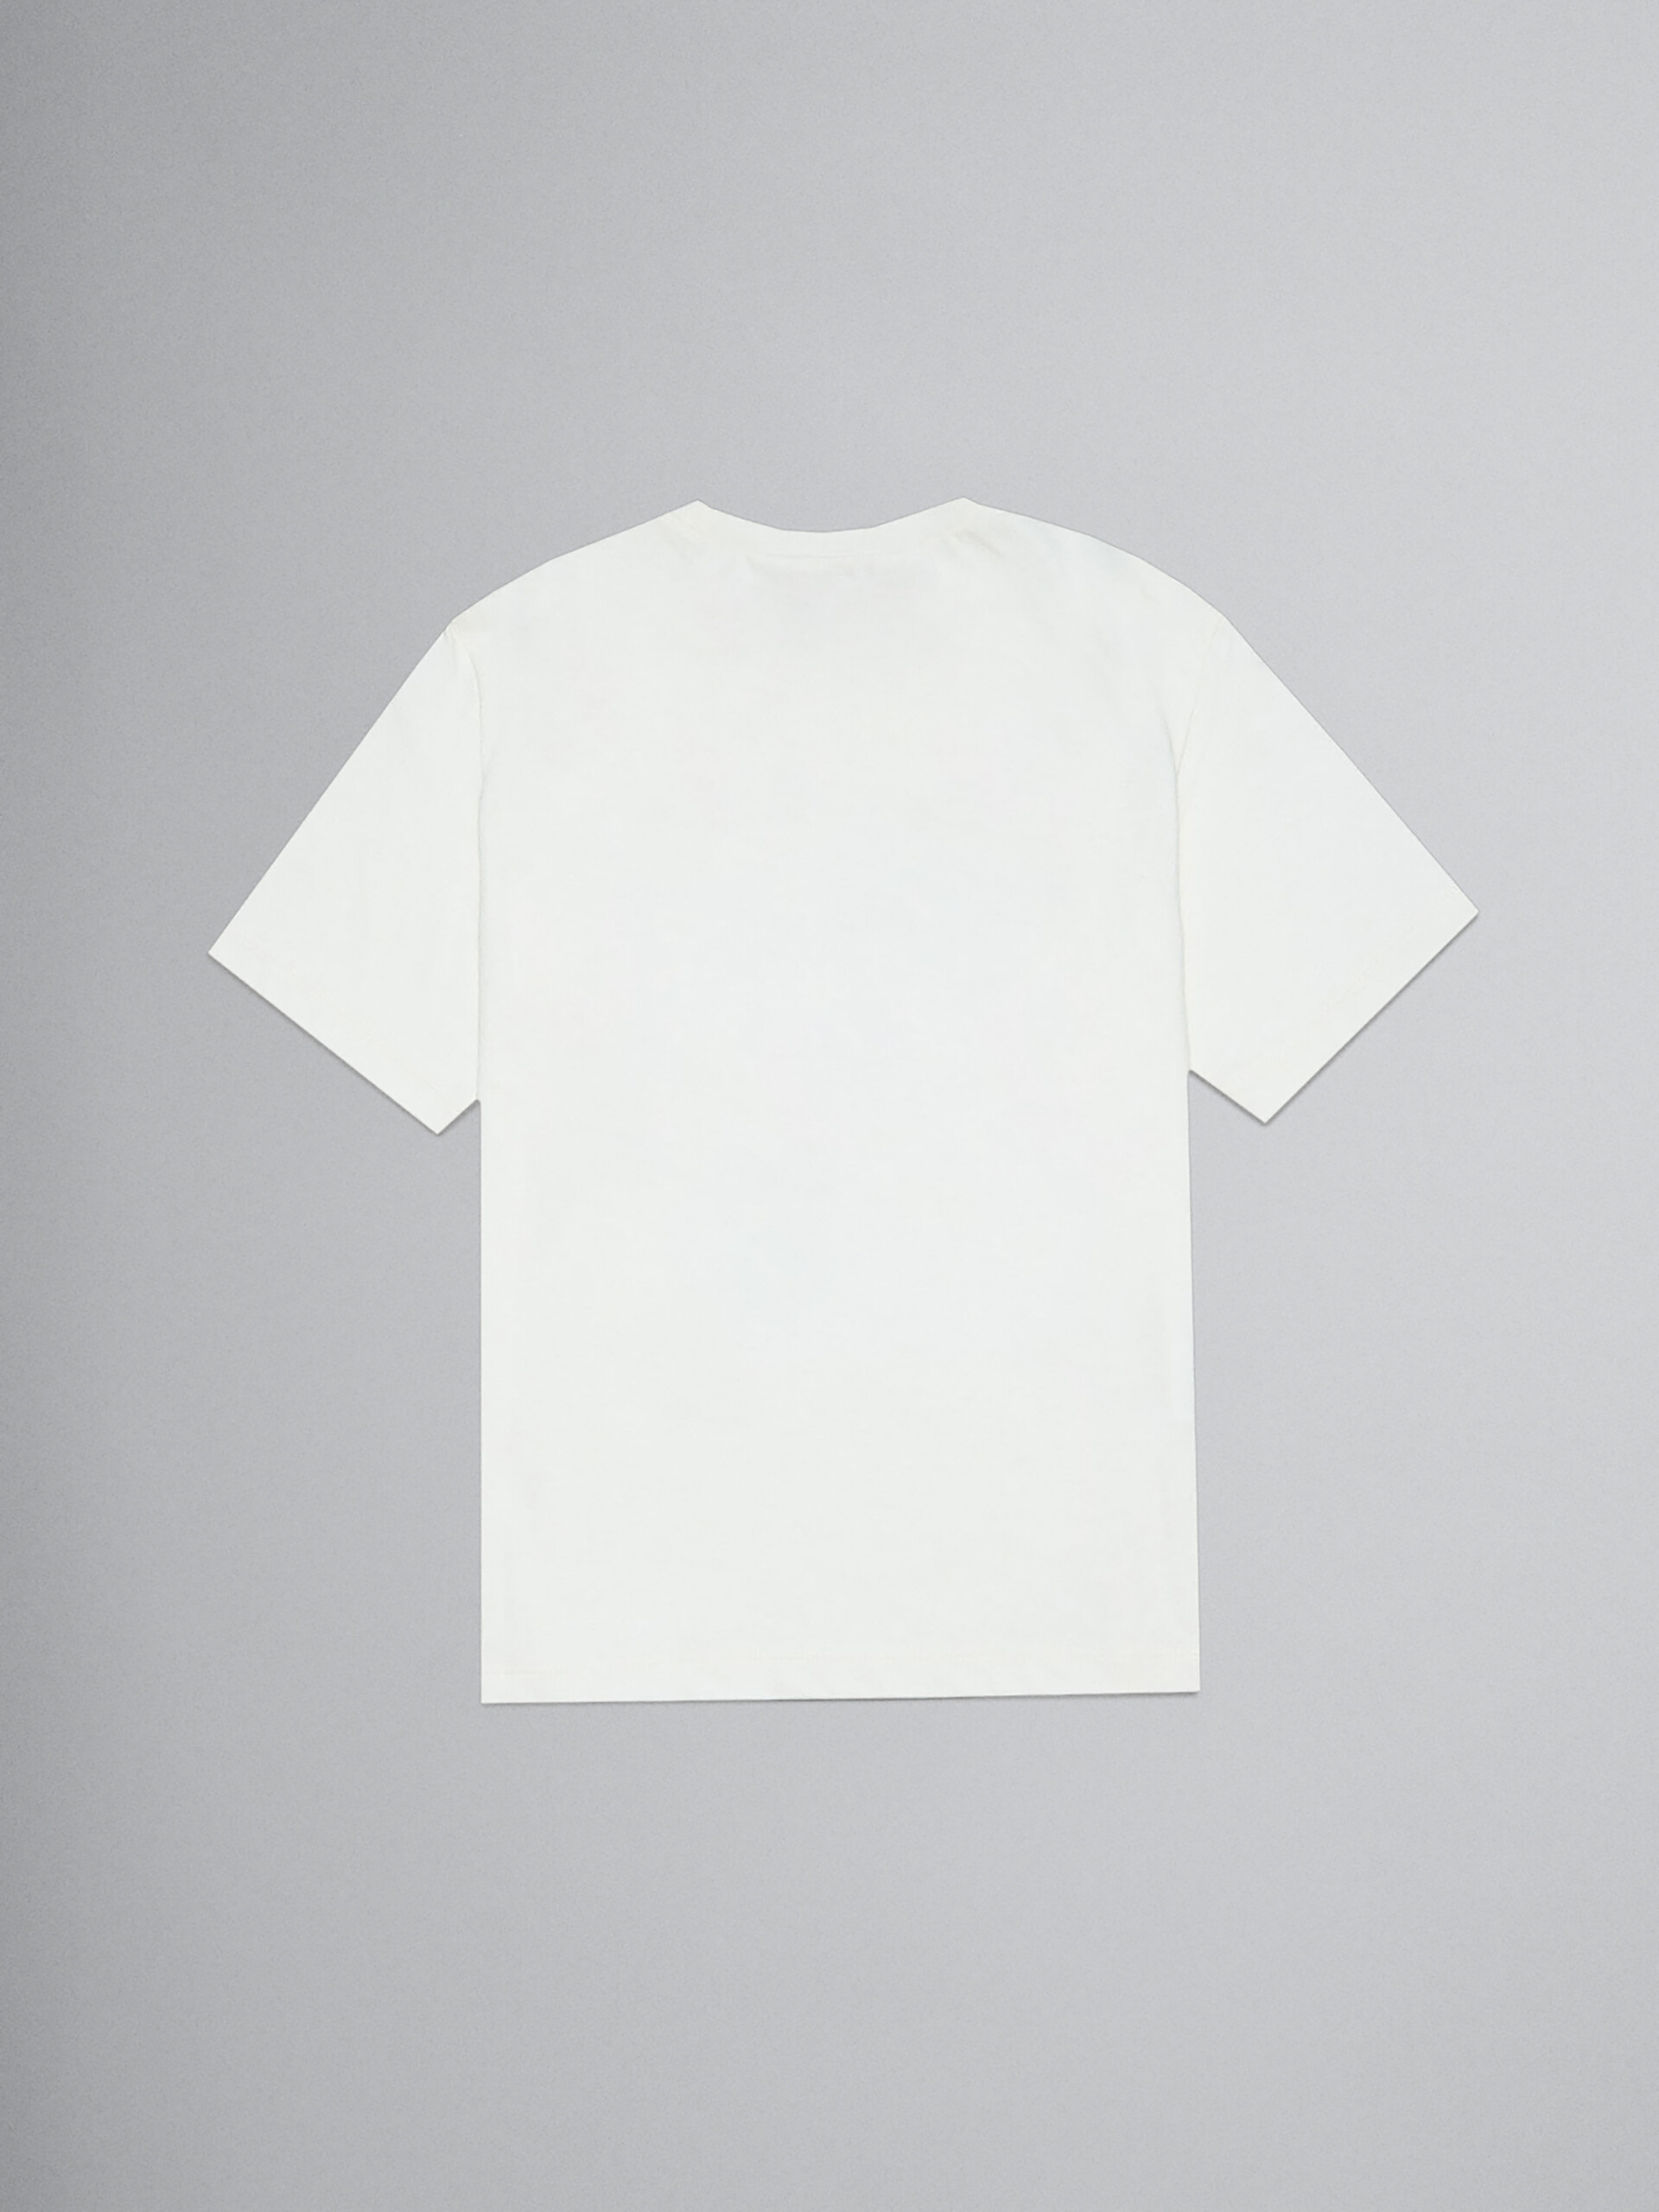 Weißes Jersey-T-Shirt mit aufgedrucktem Gesicht - T-shirts - Image 2